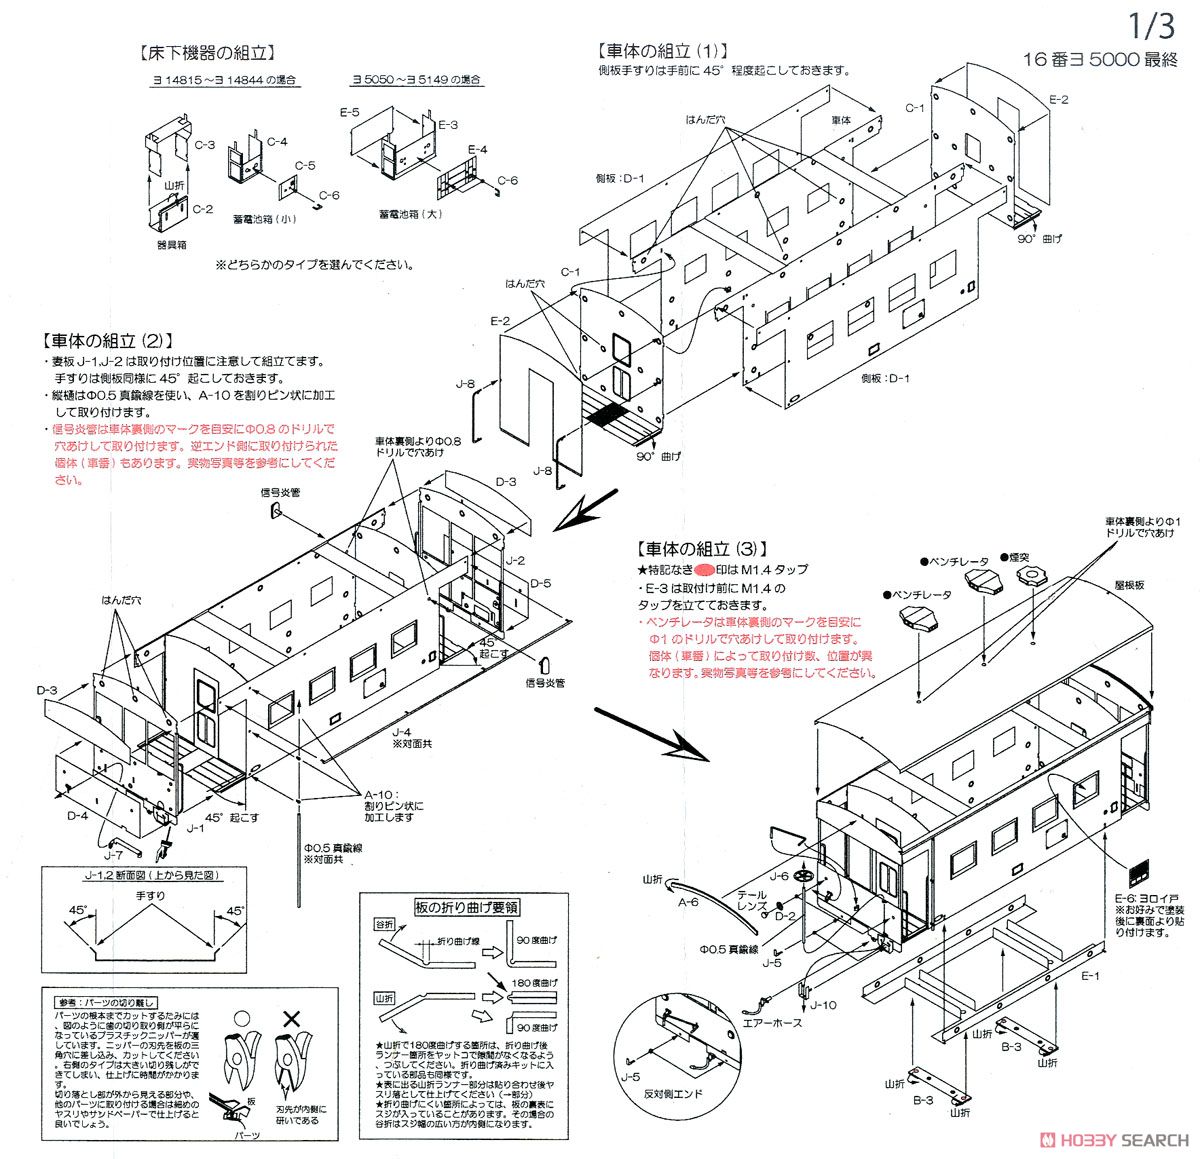 16番(HO) 国鉄 ヨ5000形 車掌車 (最終タイプ) (組み立てキット) (鉄道模型) 設計図1